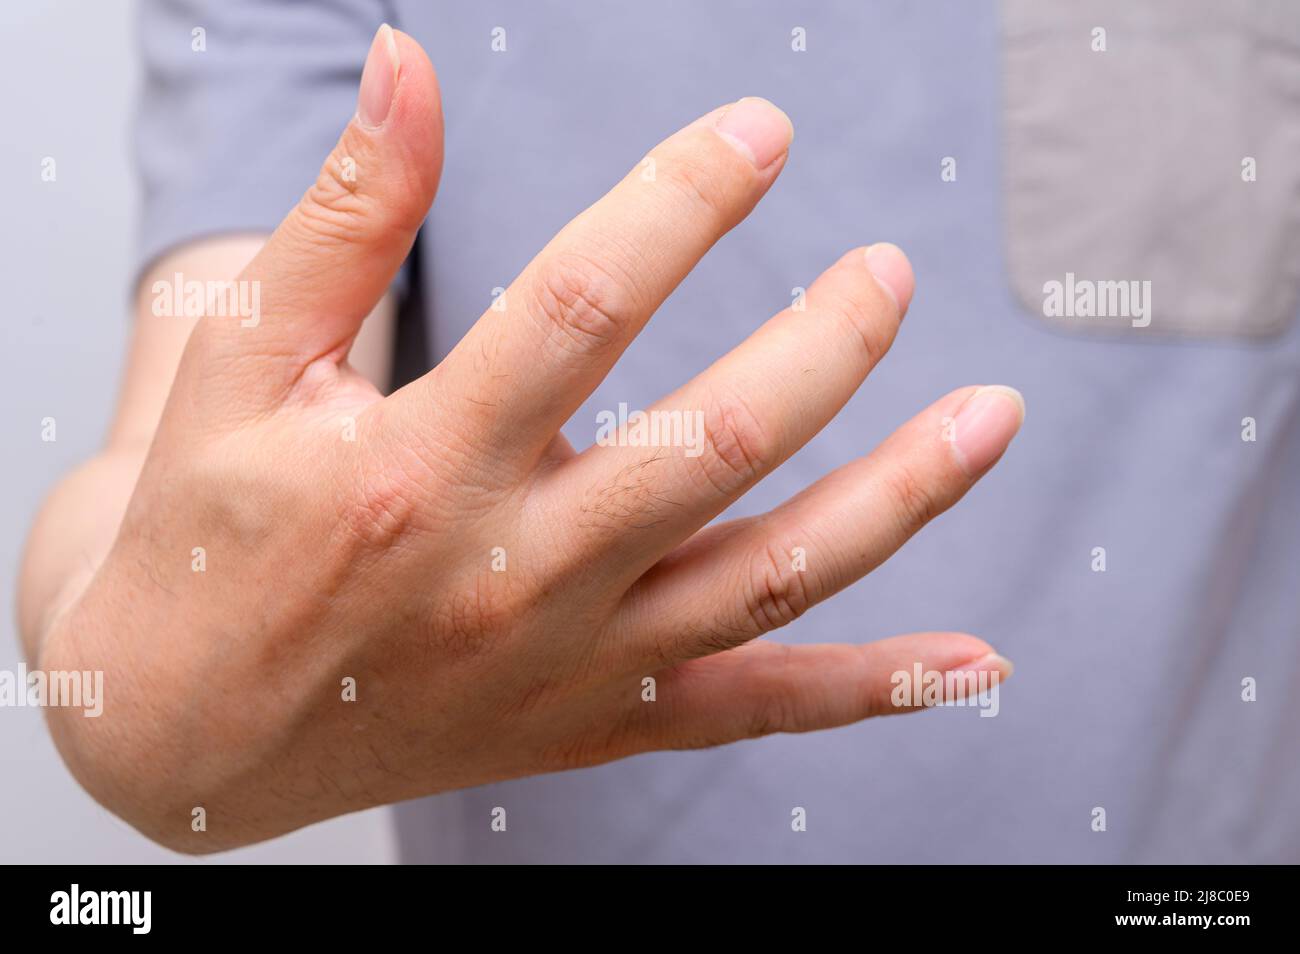 Manos de hombres que sufren de dolor en las articulaciones de los dedos. Causas de la artritis reumatoide, gota. Atención médica y concepto médico. Foto de stock